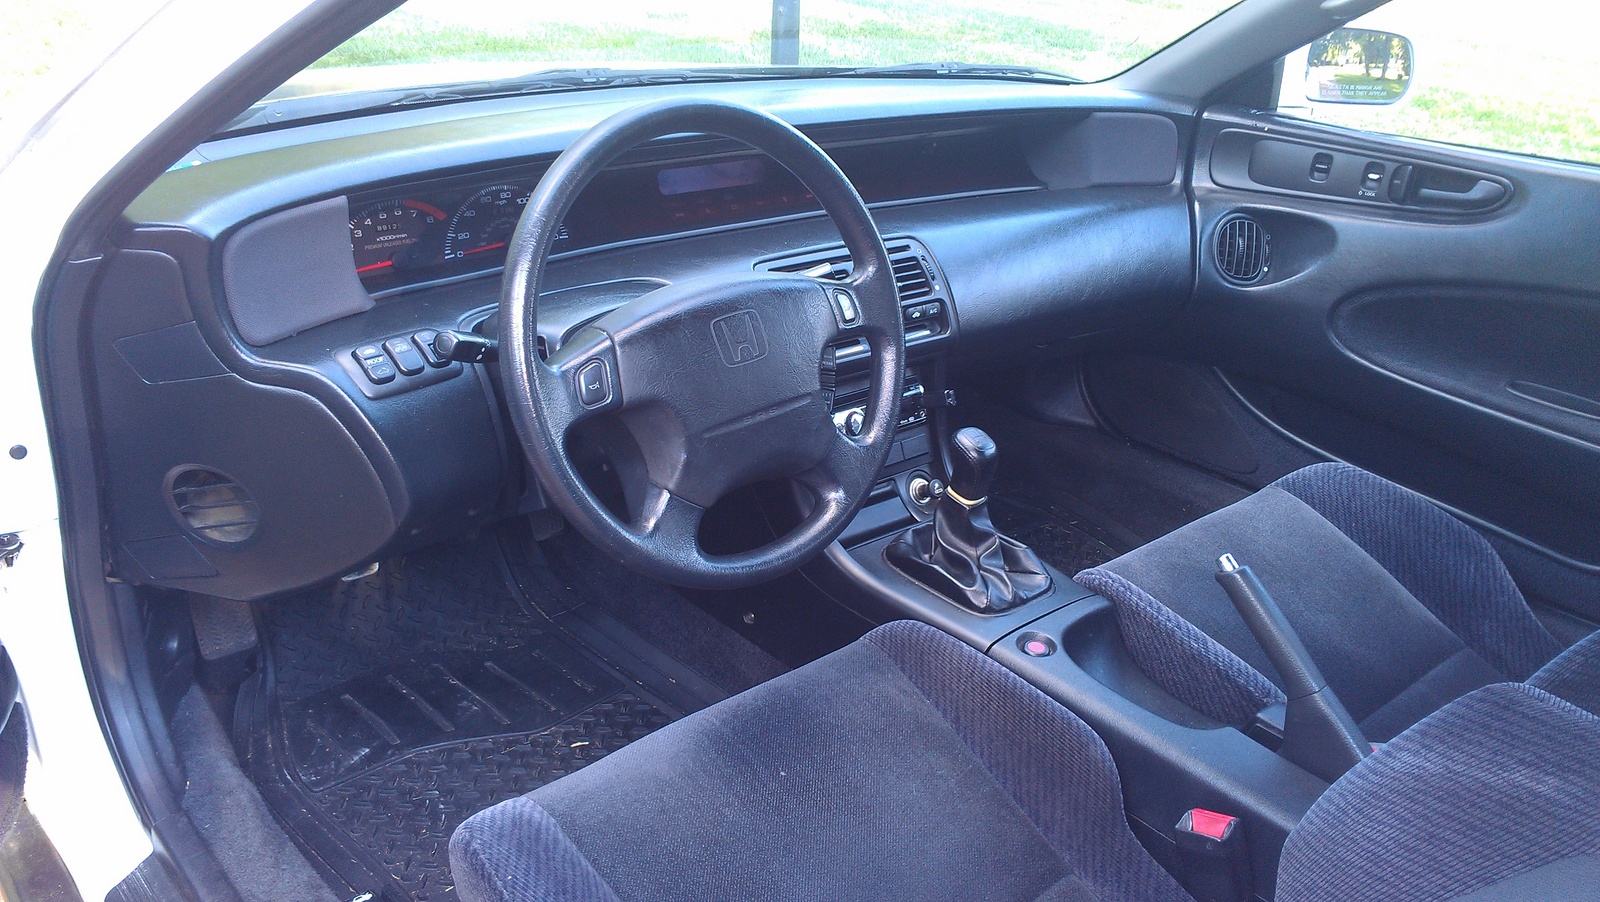 1992 Honda prelude interior #1